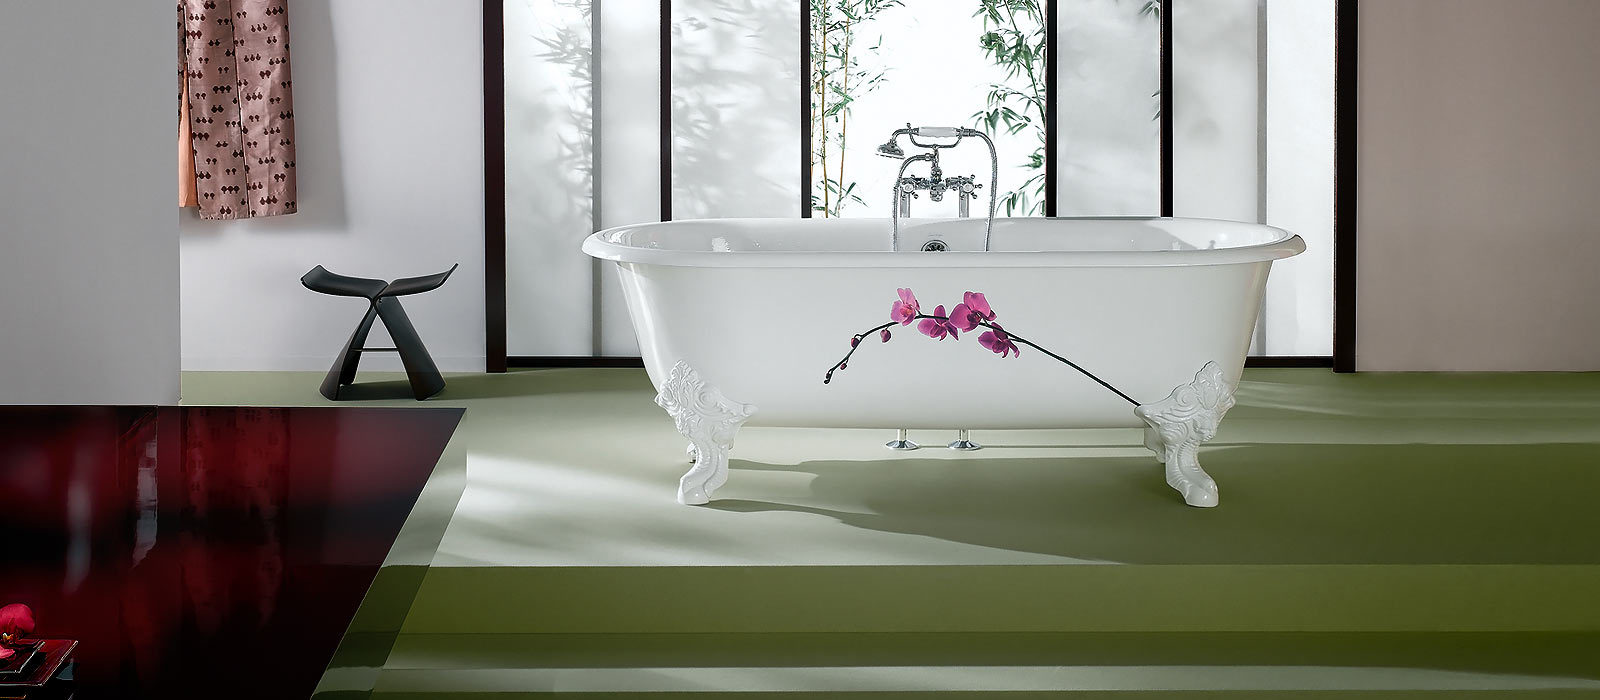 Чугунная ванна или акриловая: Какая ванна лучше – стальная, чугунная или акриловая?